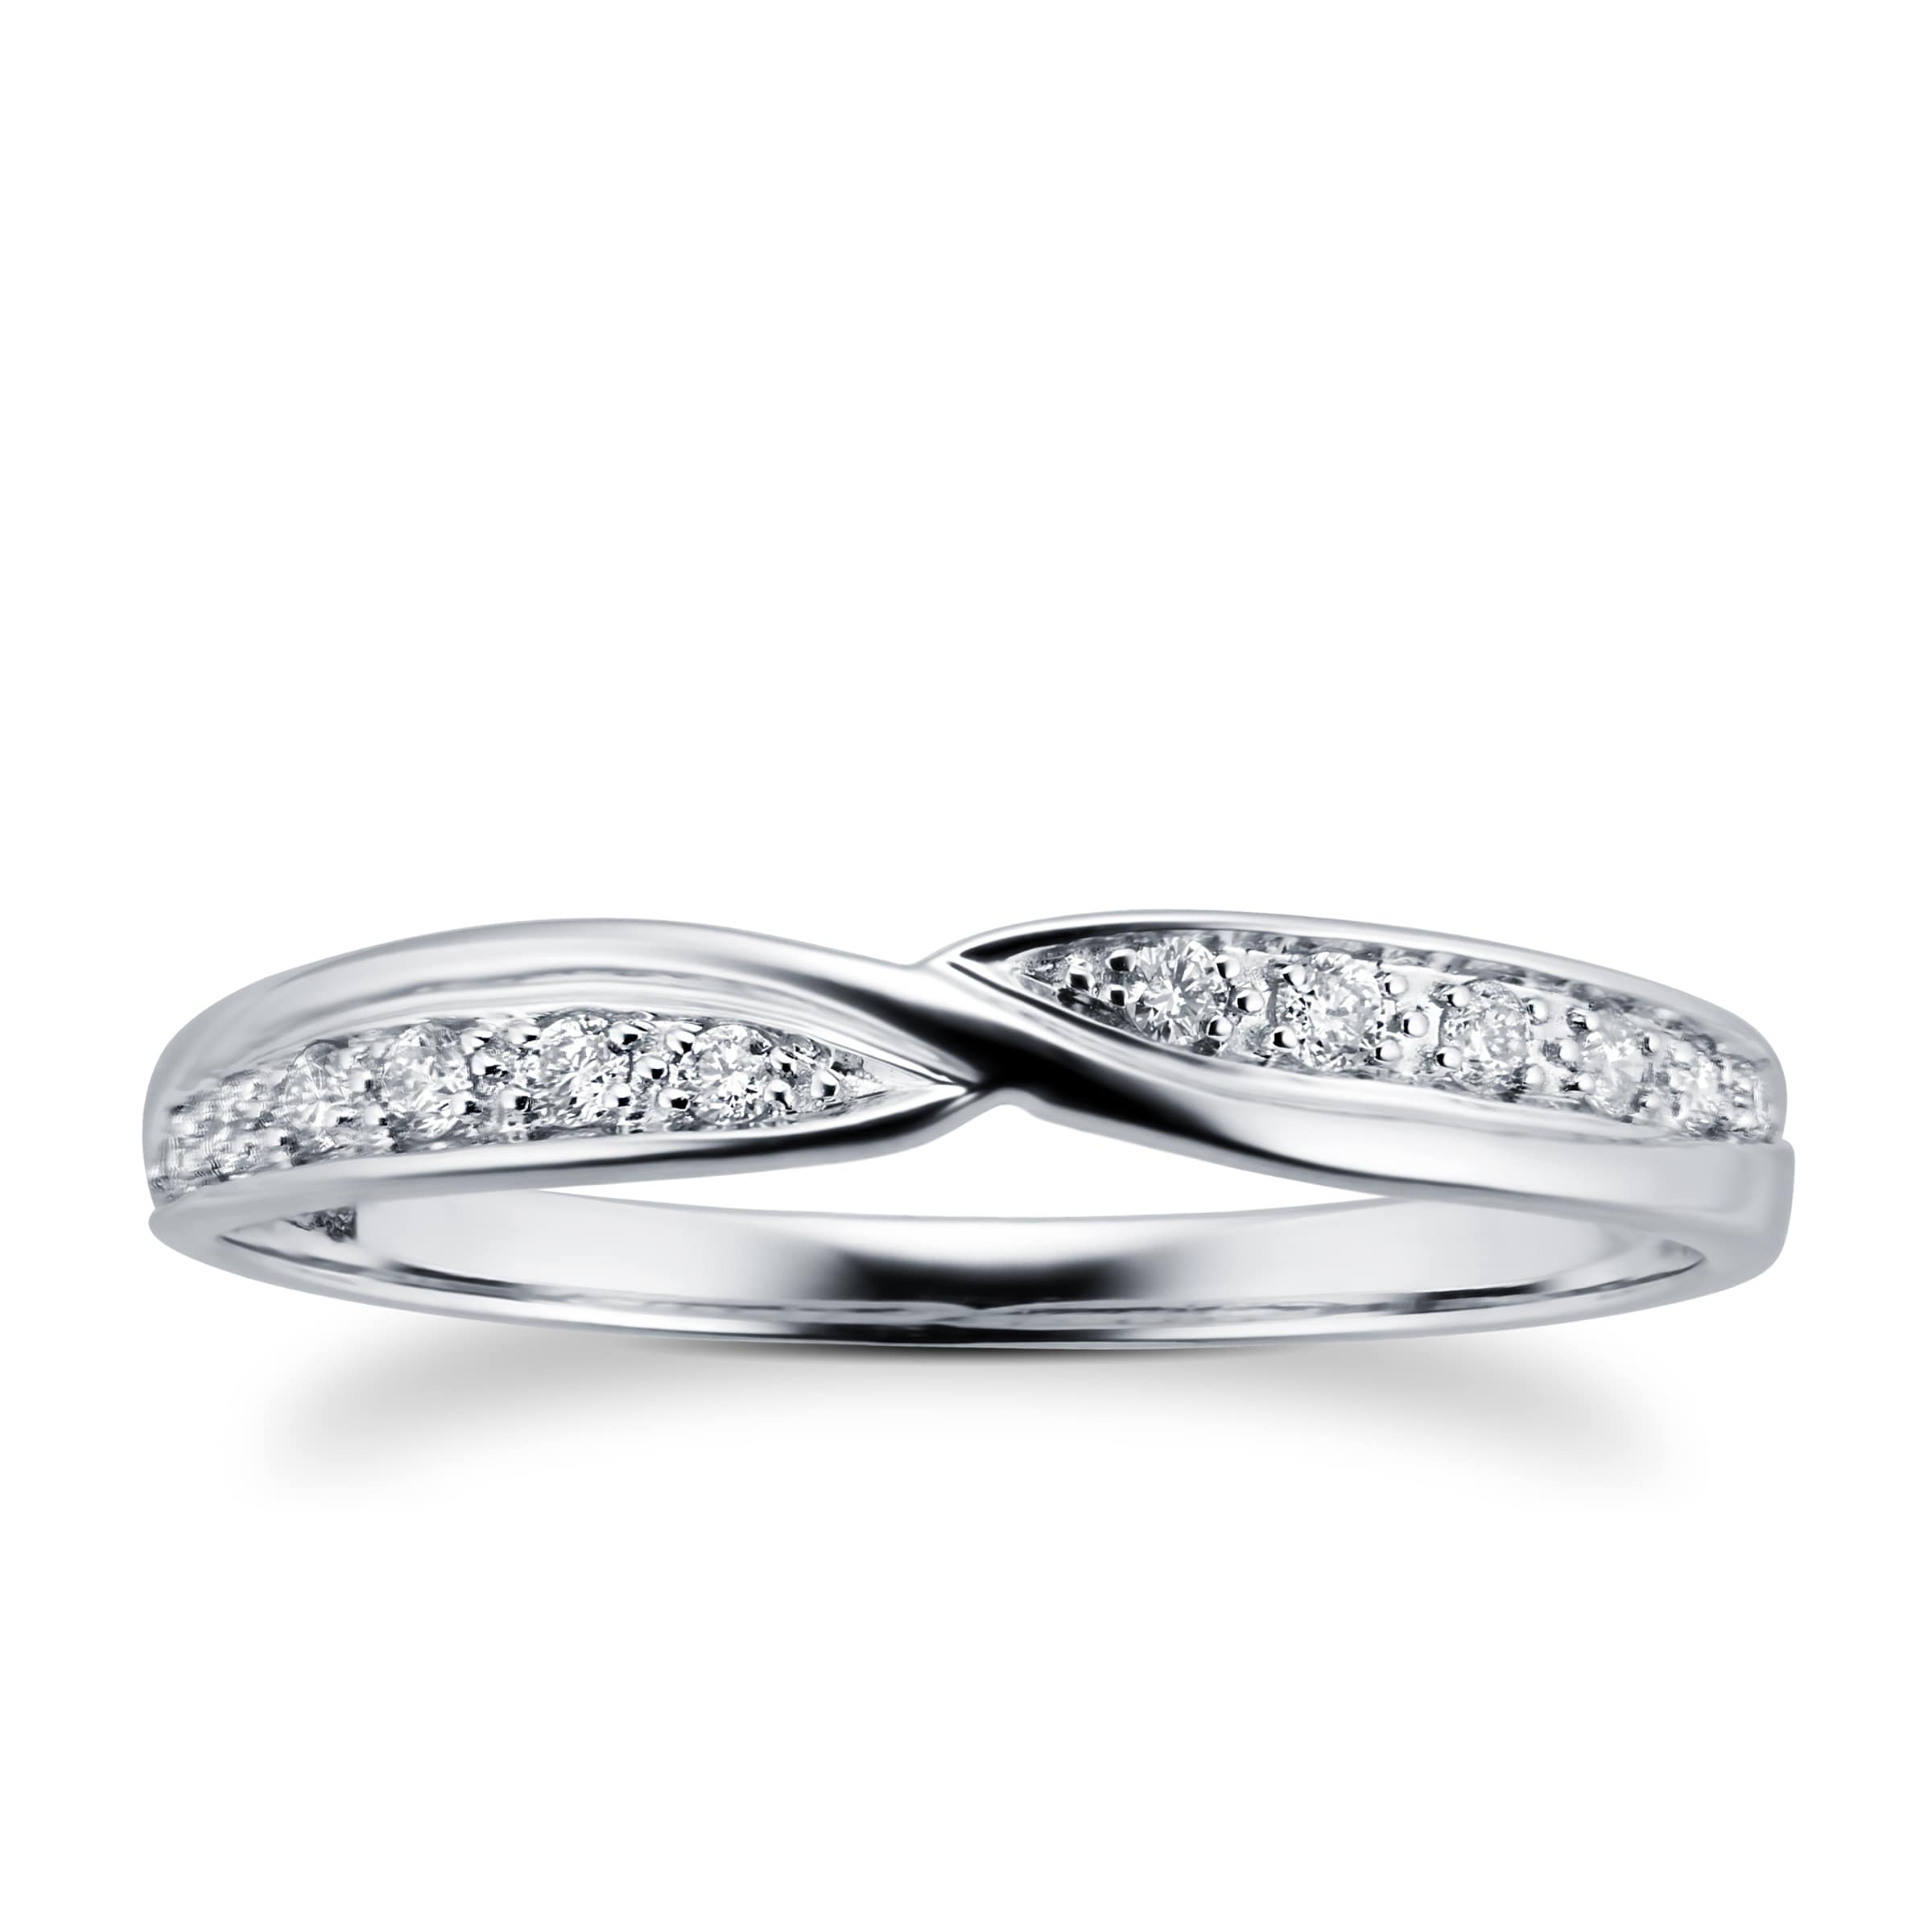 Ladies 0.09 Total Carat Weight Diamond Set Kiss Wedding Ring In 9 Carat White Gold - Ring Size J